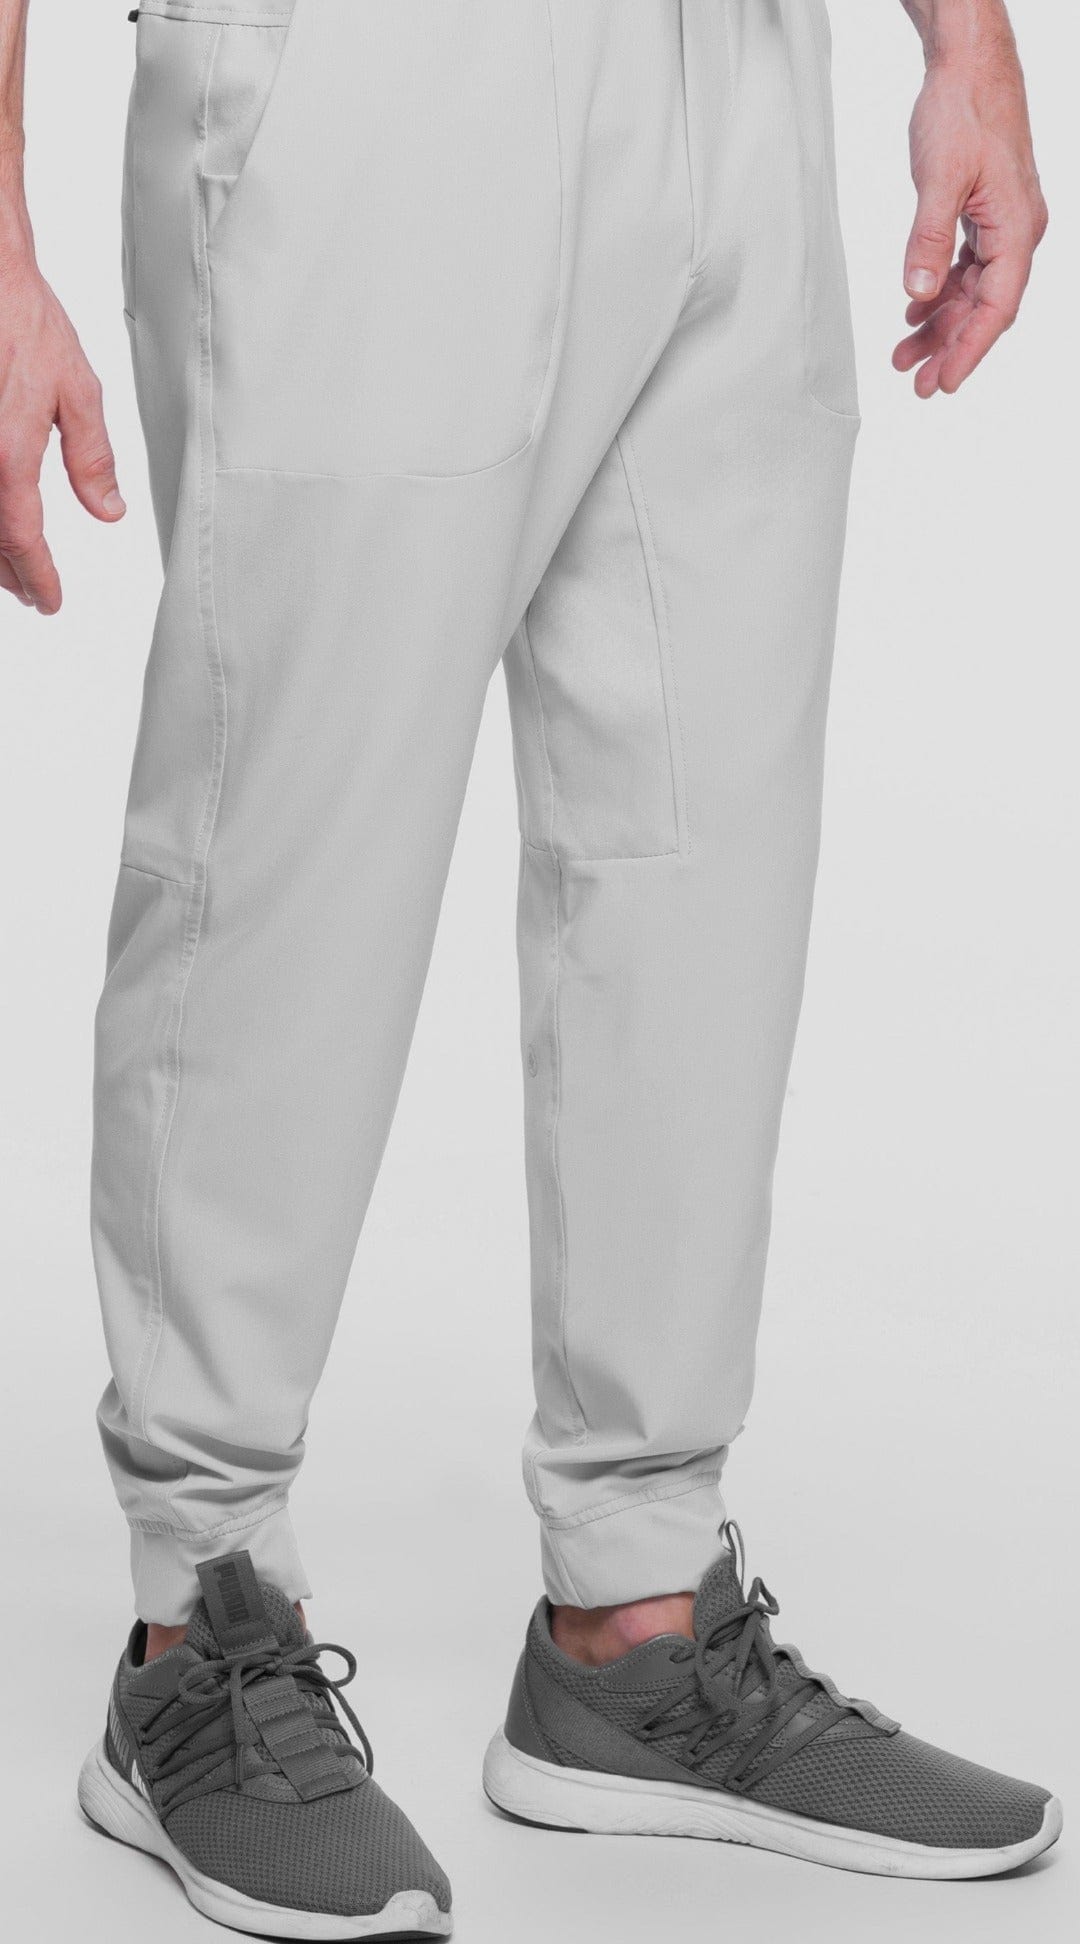 Kanaus® Pants Casual Deep White | Caballero - Kanaus